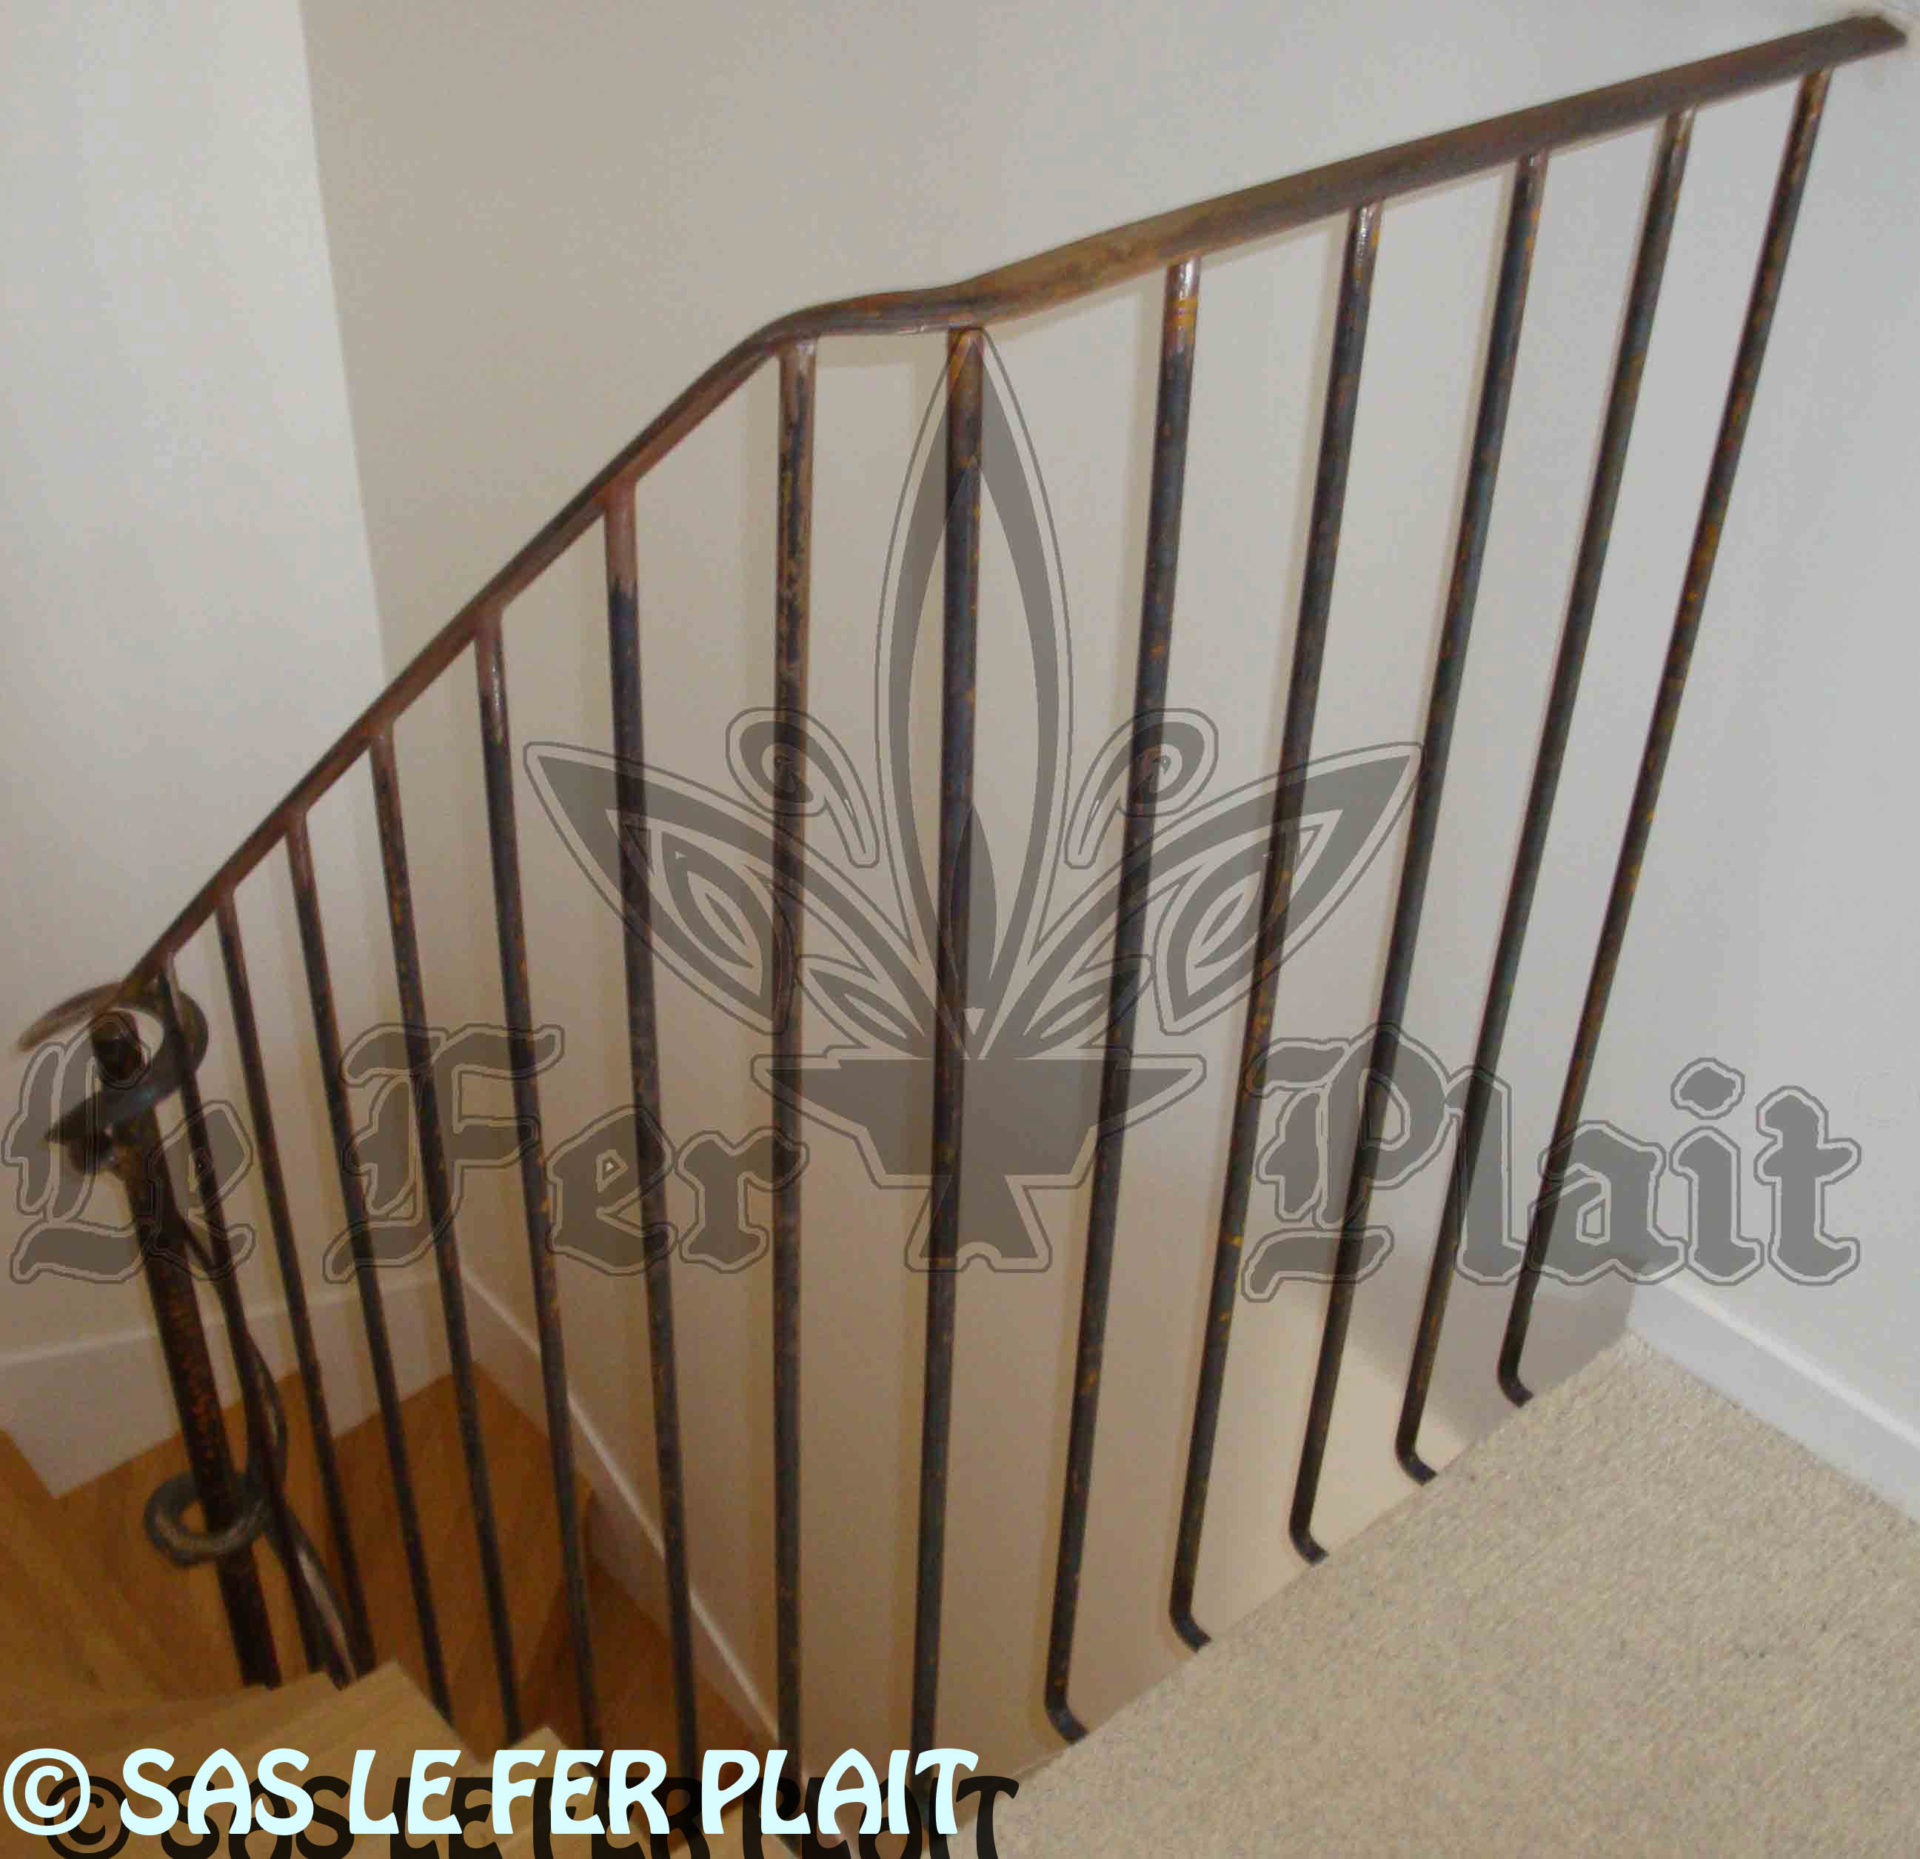 Le Fer Plait ferronnier à eaubonne dans le val D'oise 95 rampe escalier fer forgé sur mesure pour éviter les accidents dans les escaliers.